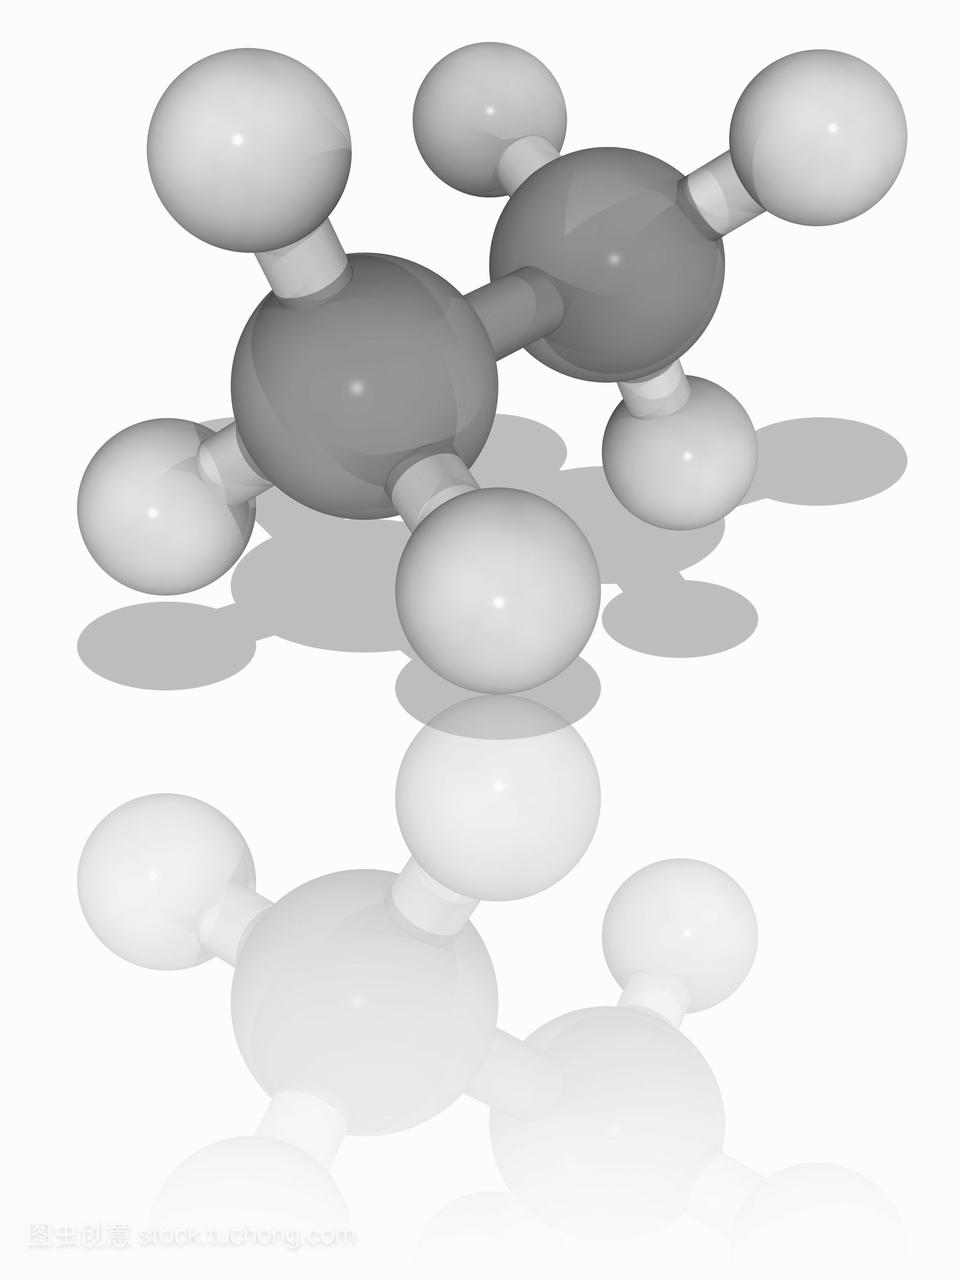 乙烷。烃链烷烃c2h6的分子模型。这种无色无